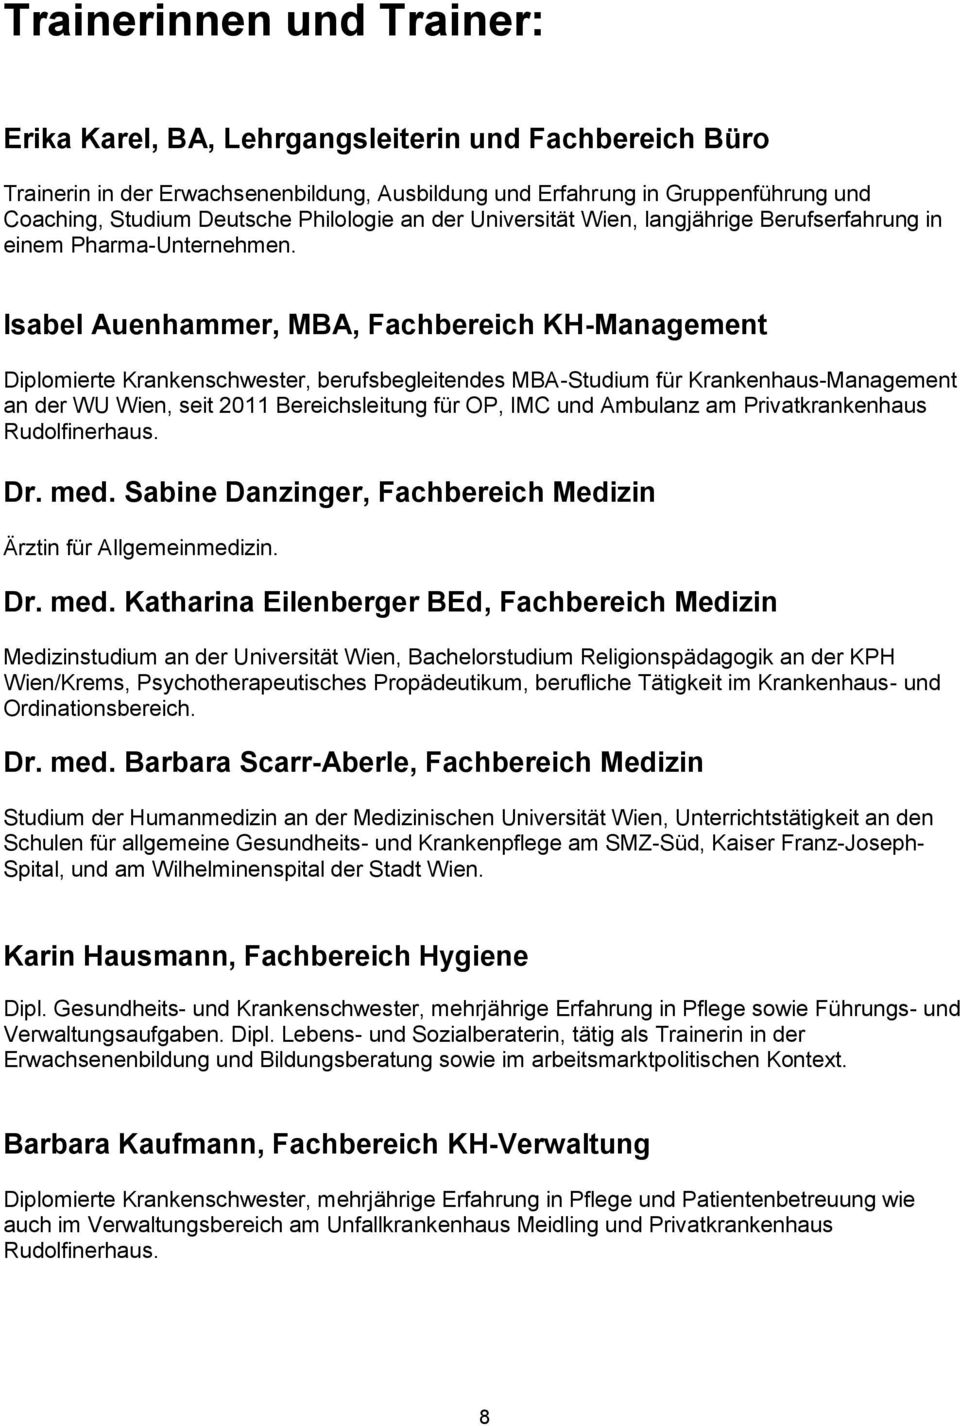 Isabel Auenhammer, MBA, Fachbereich KH-Management Diplomierte Krankenschwester, berufsbegleitendes MBA-Studium für Krankenhaus-Management an der WU Wien, seit 2011 Bereichsleitung für OP, IMC und